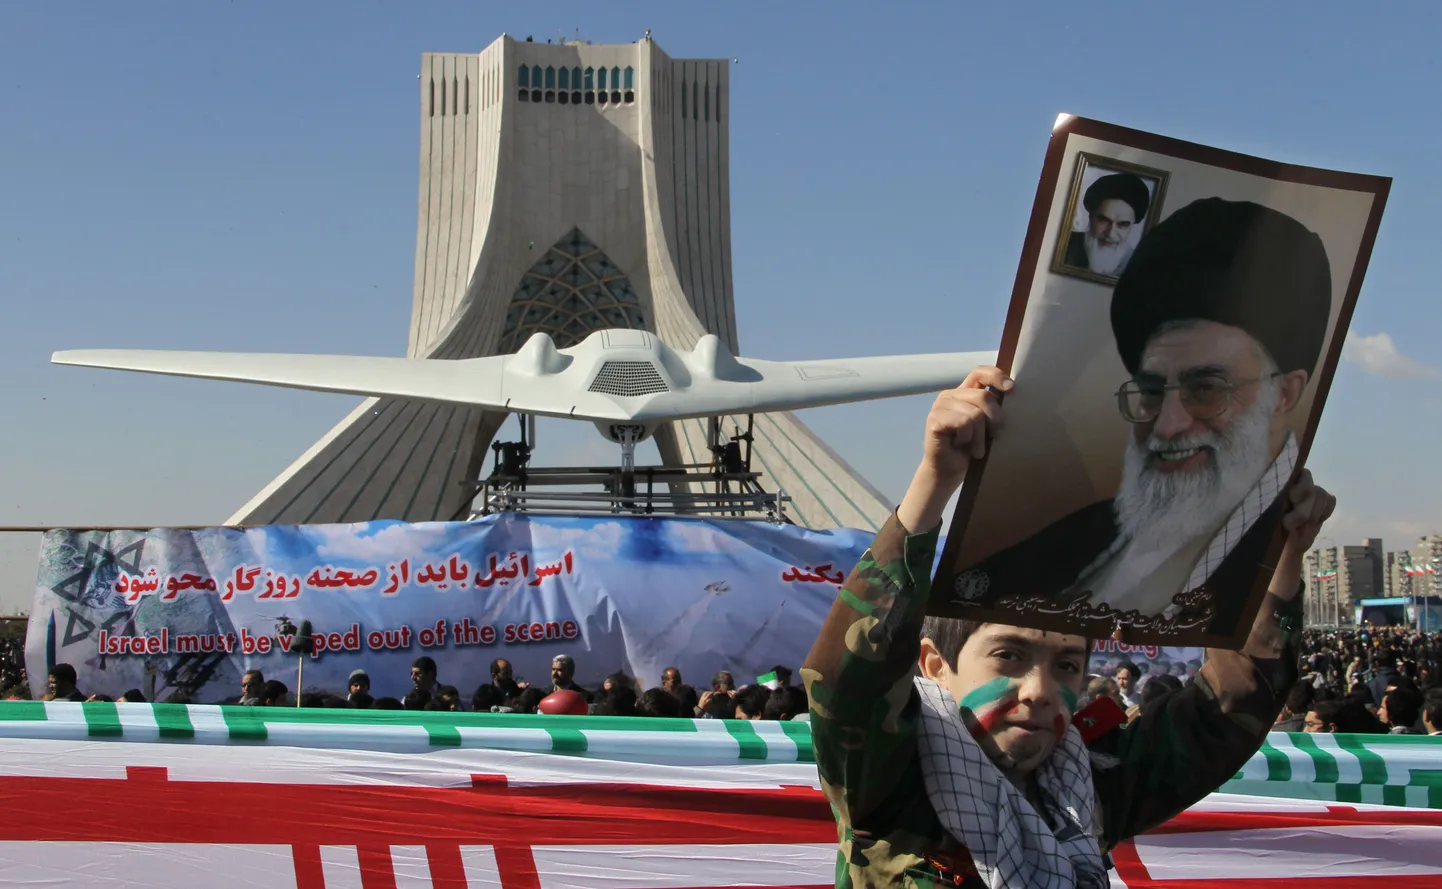 Ühendriikide mehitamata luurelennuki RQ-170 Sentinel koopia täna Teherani keskväljakul. Pildil lehvitab poiss Iraani kõrgeima juhi ajatolla Ali Khamenei pildiga plakatit.